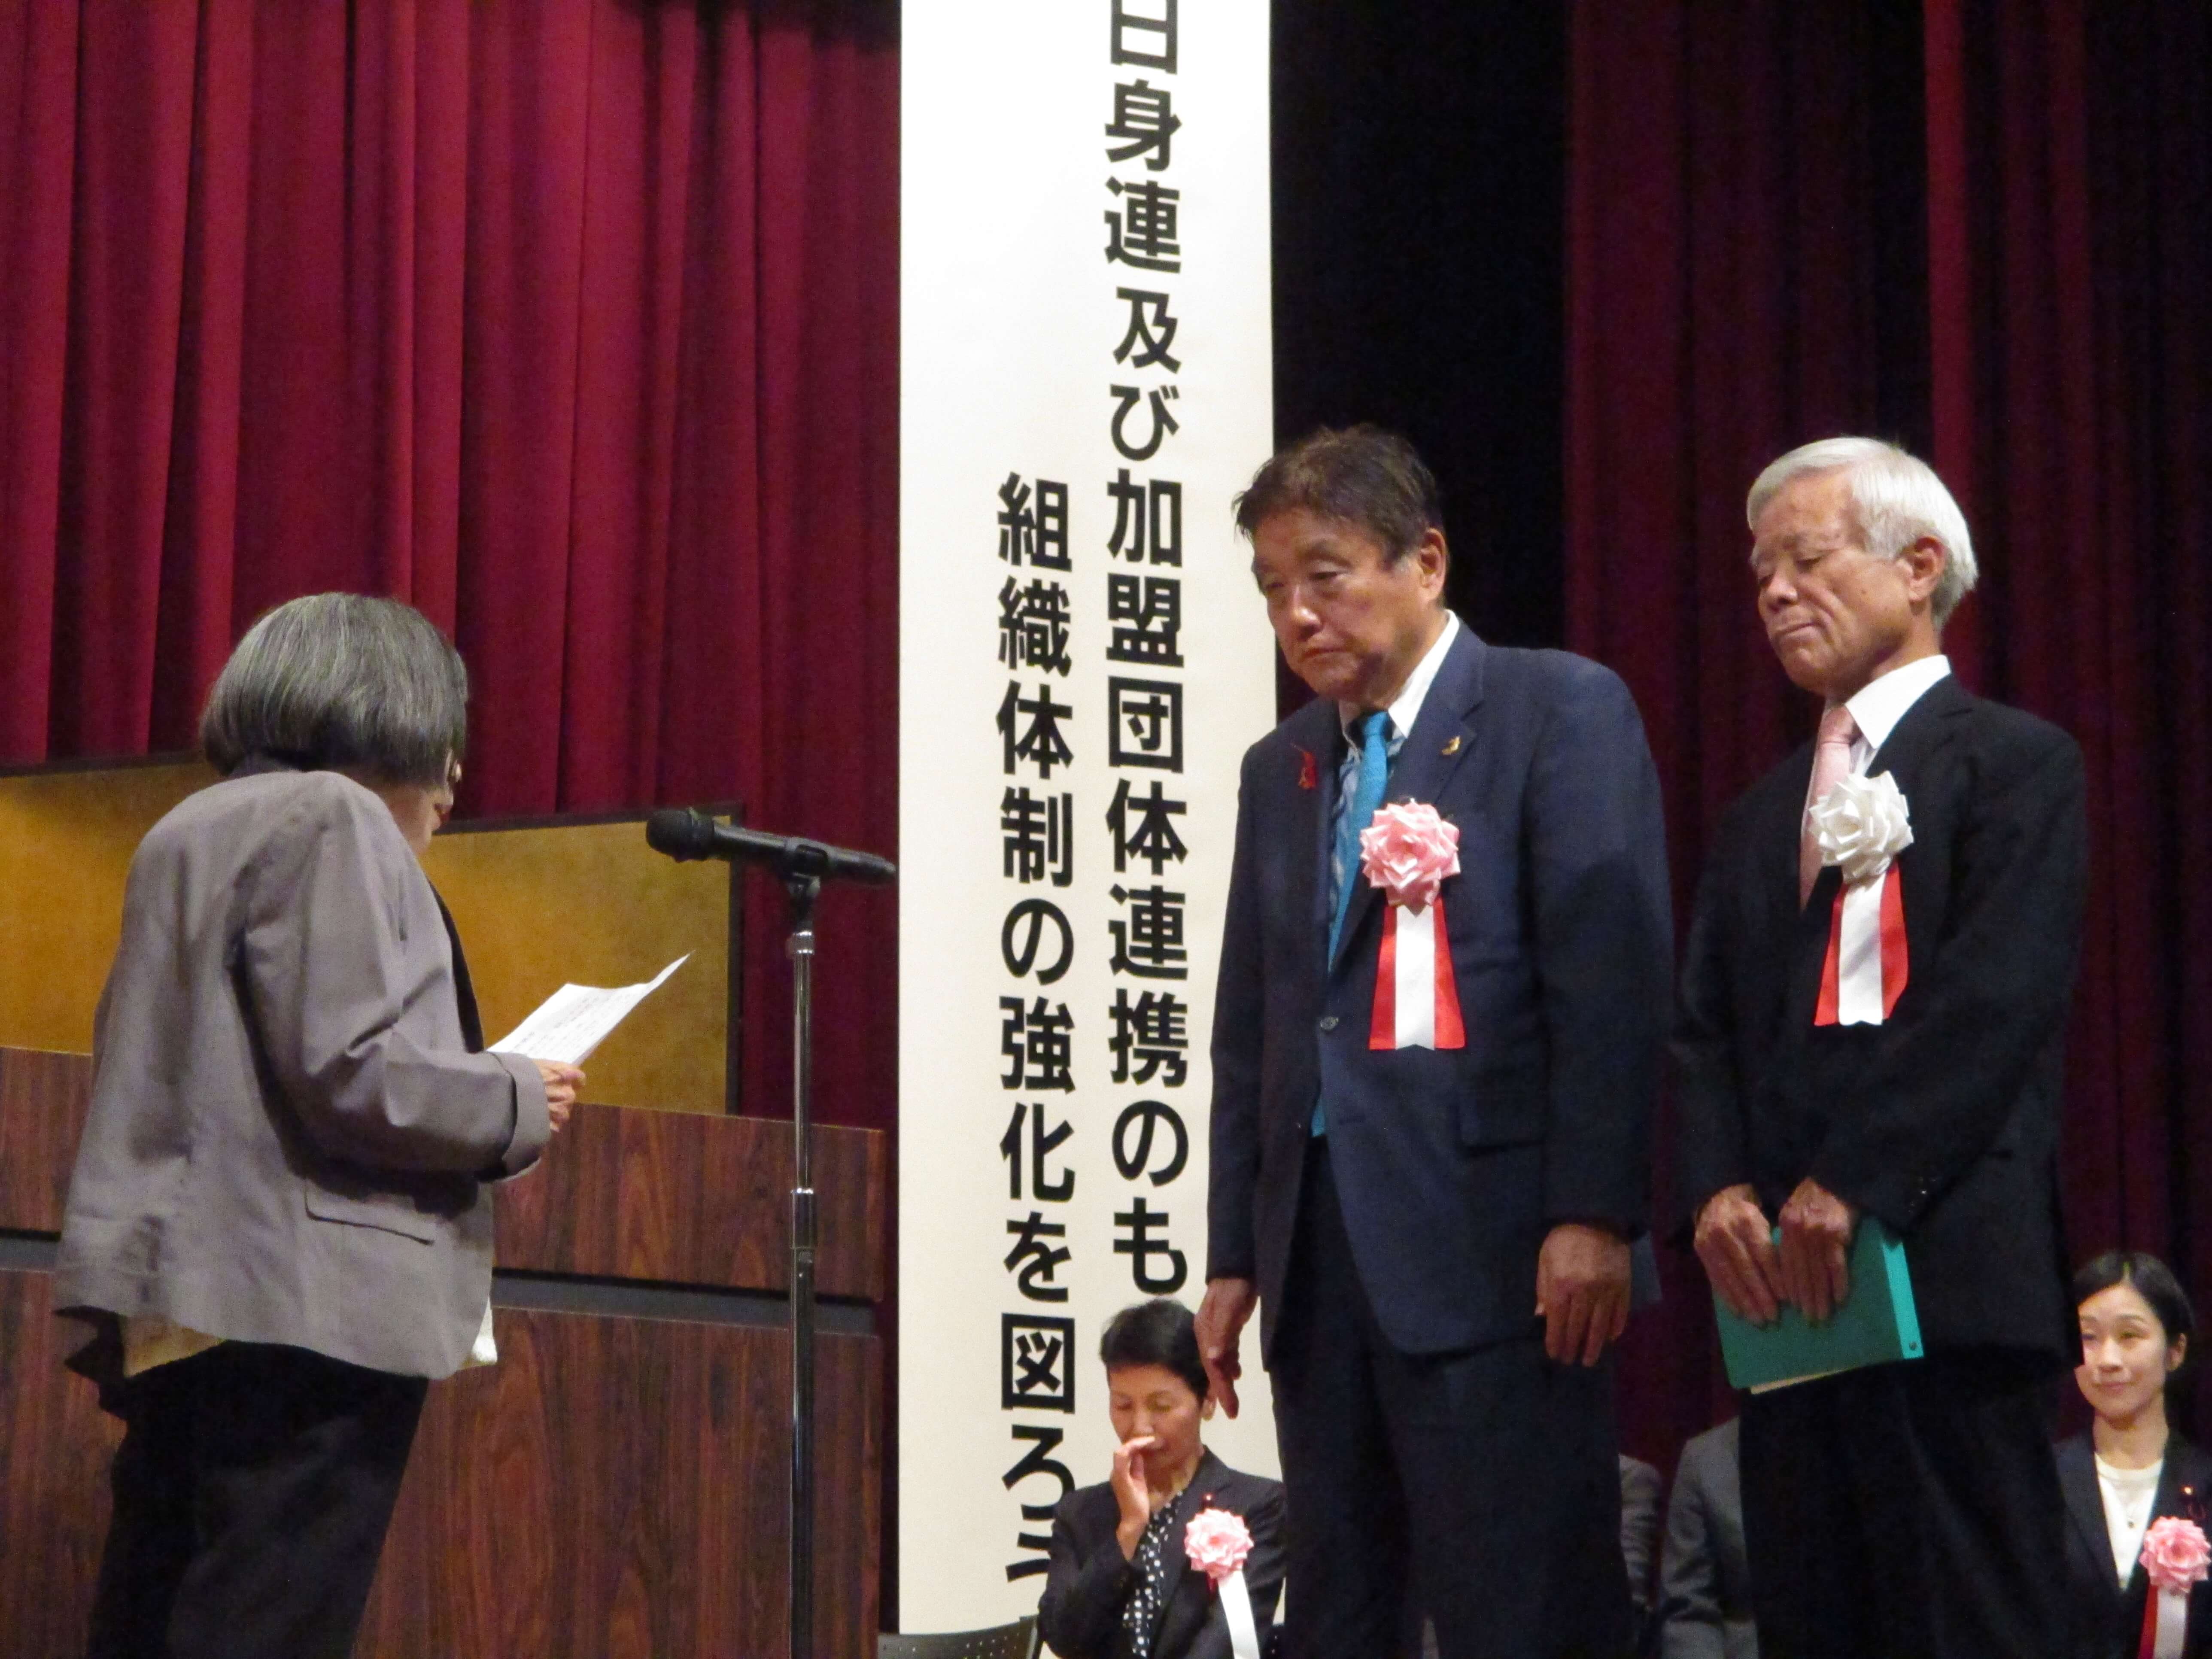 名古屋市身体障害者福祉大会での表彰の様子